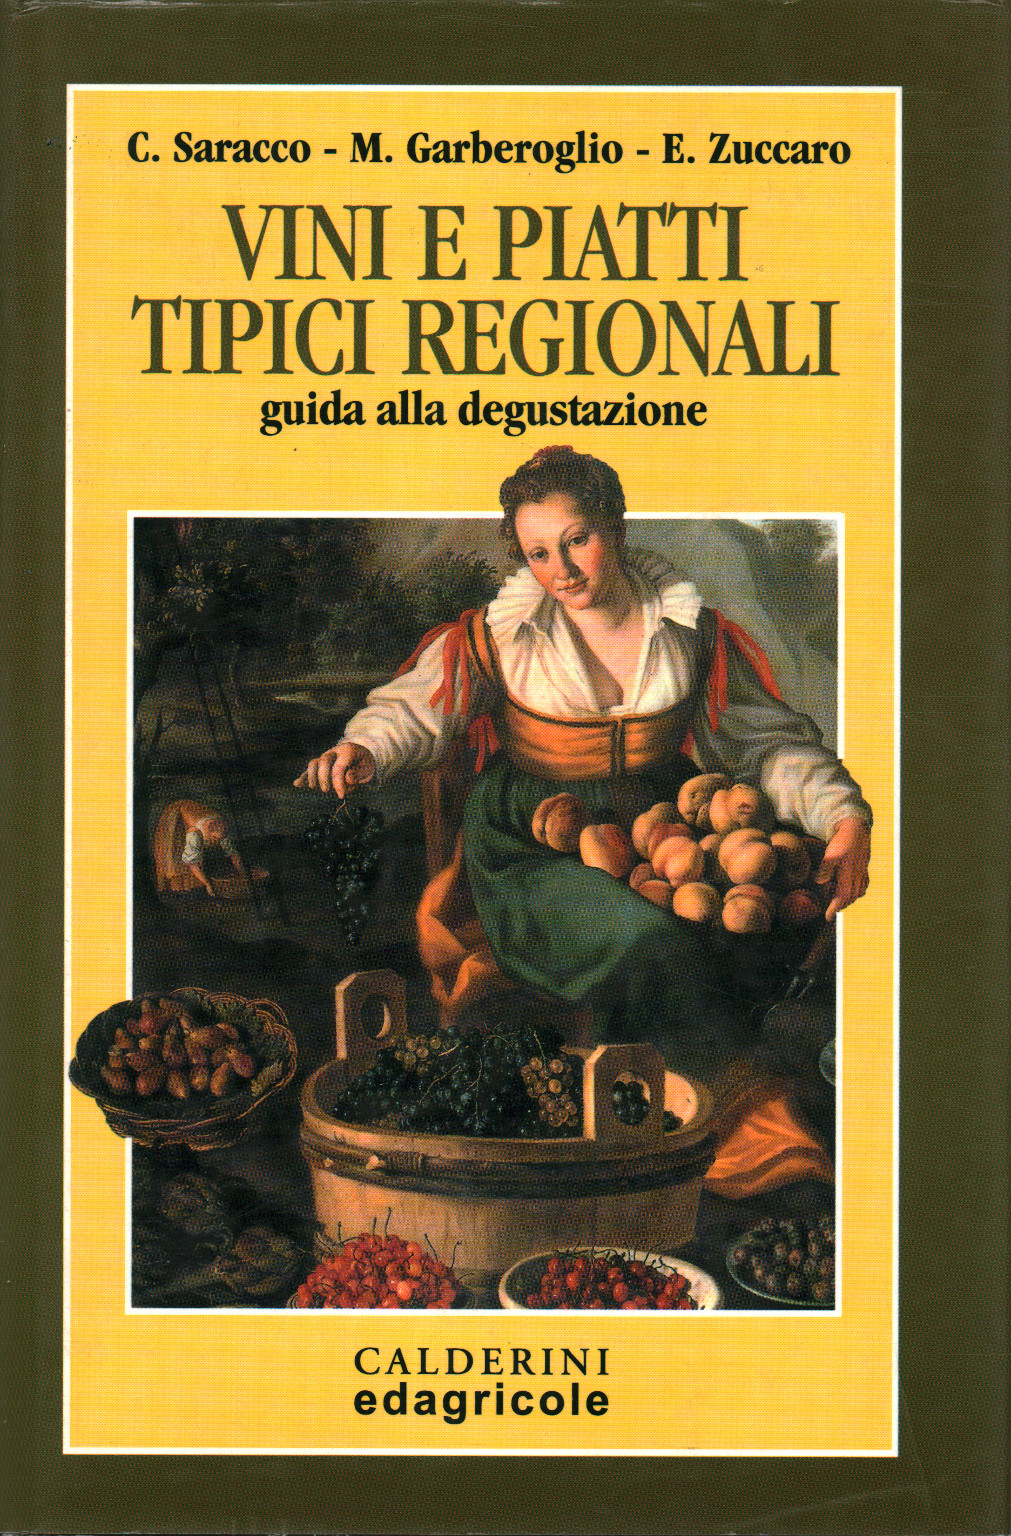 Vini e piatti tipici regionali, s.a.